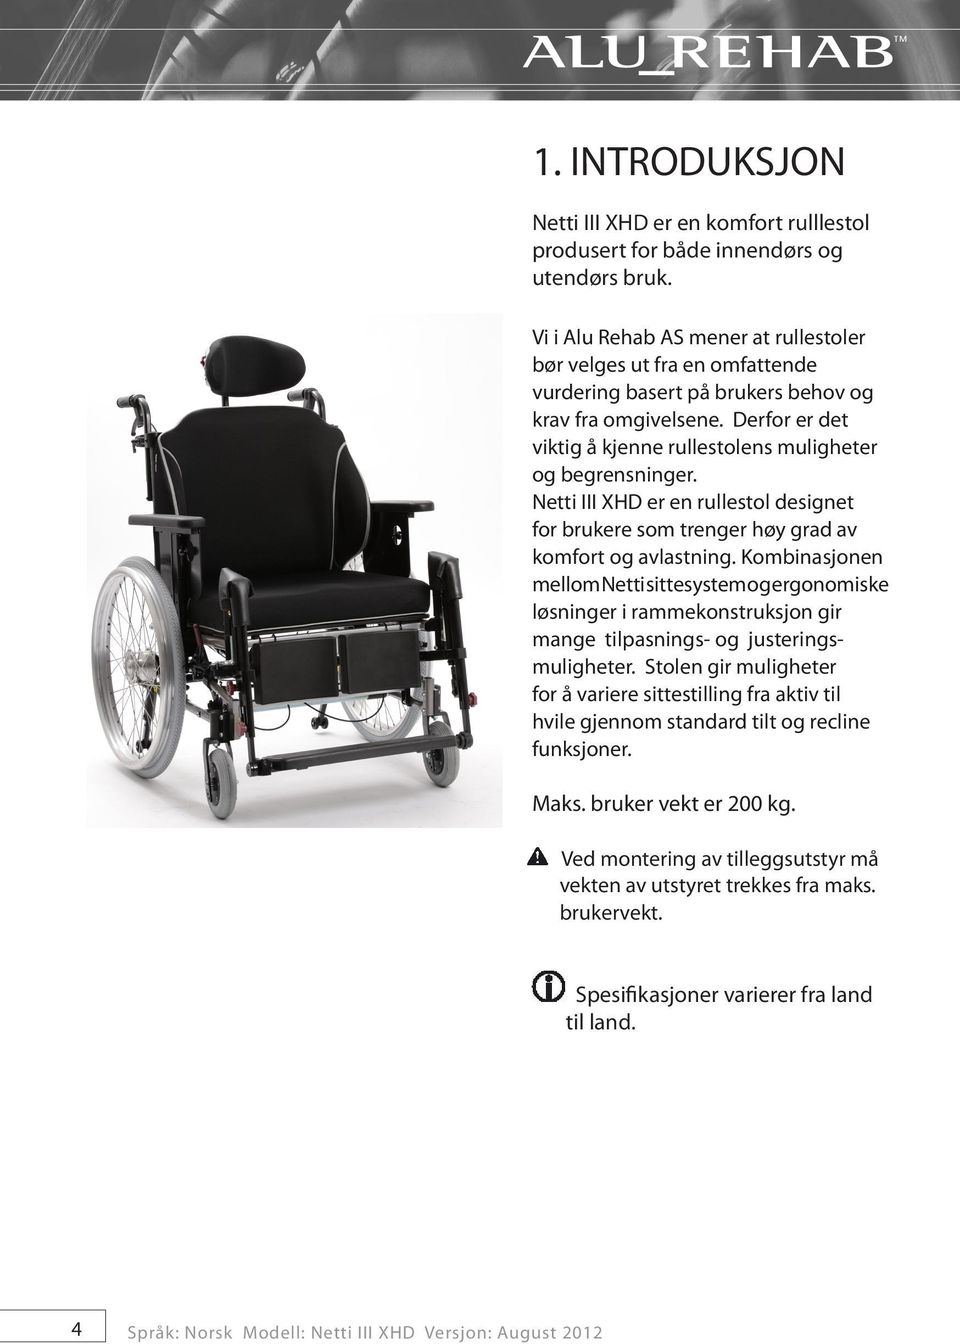 Derfor er det viktig å kjenne rullestolens muligheter og begrensninger. Netti III XHD er en rullestol designet for brukere som trenger høy grad av komfort og avlastning.